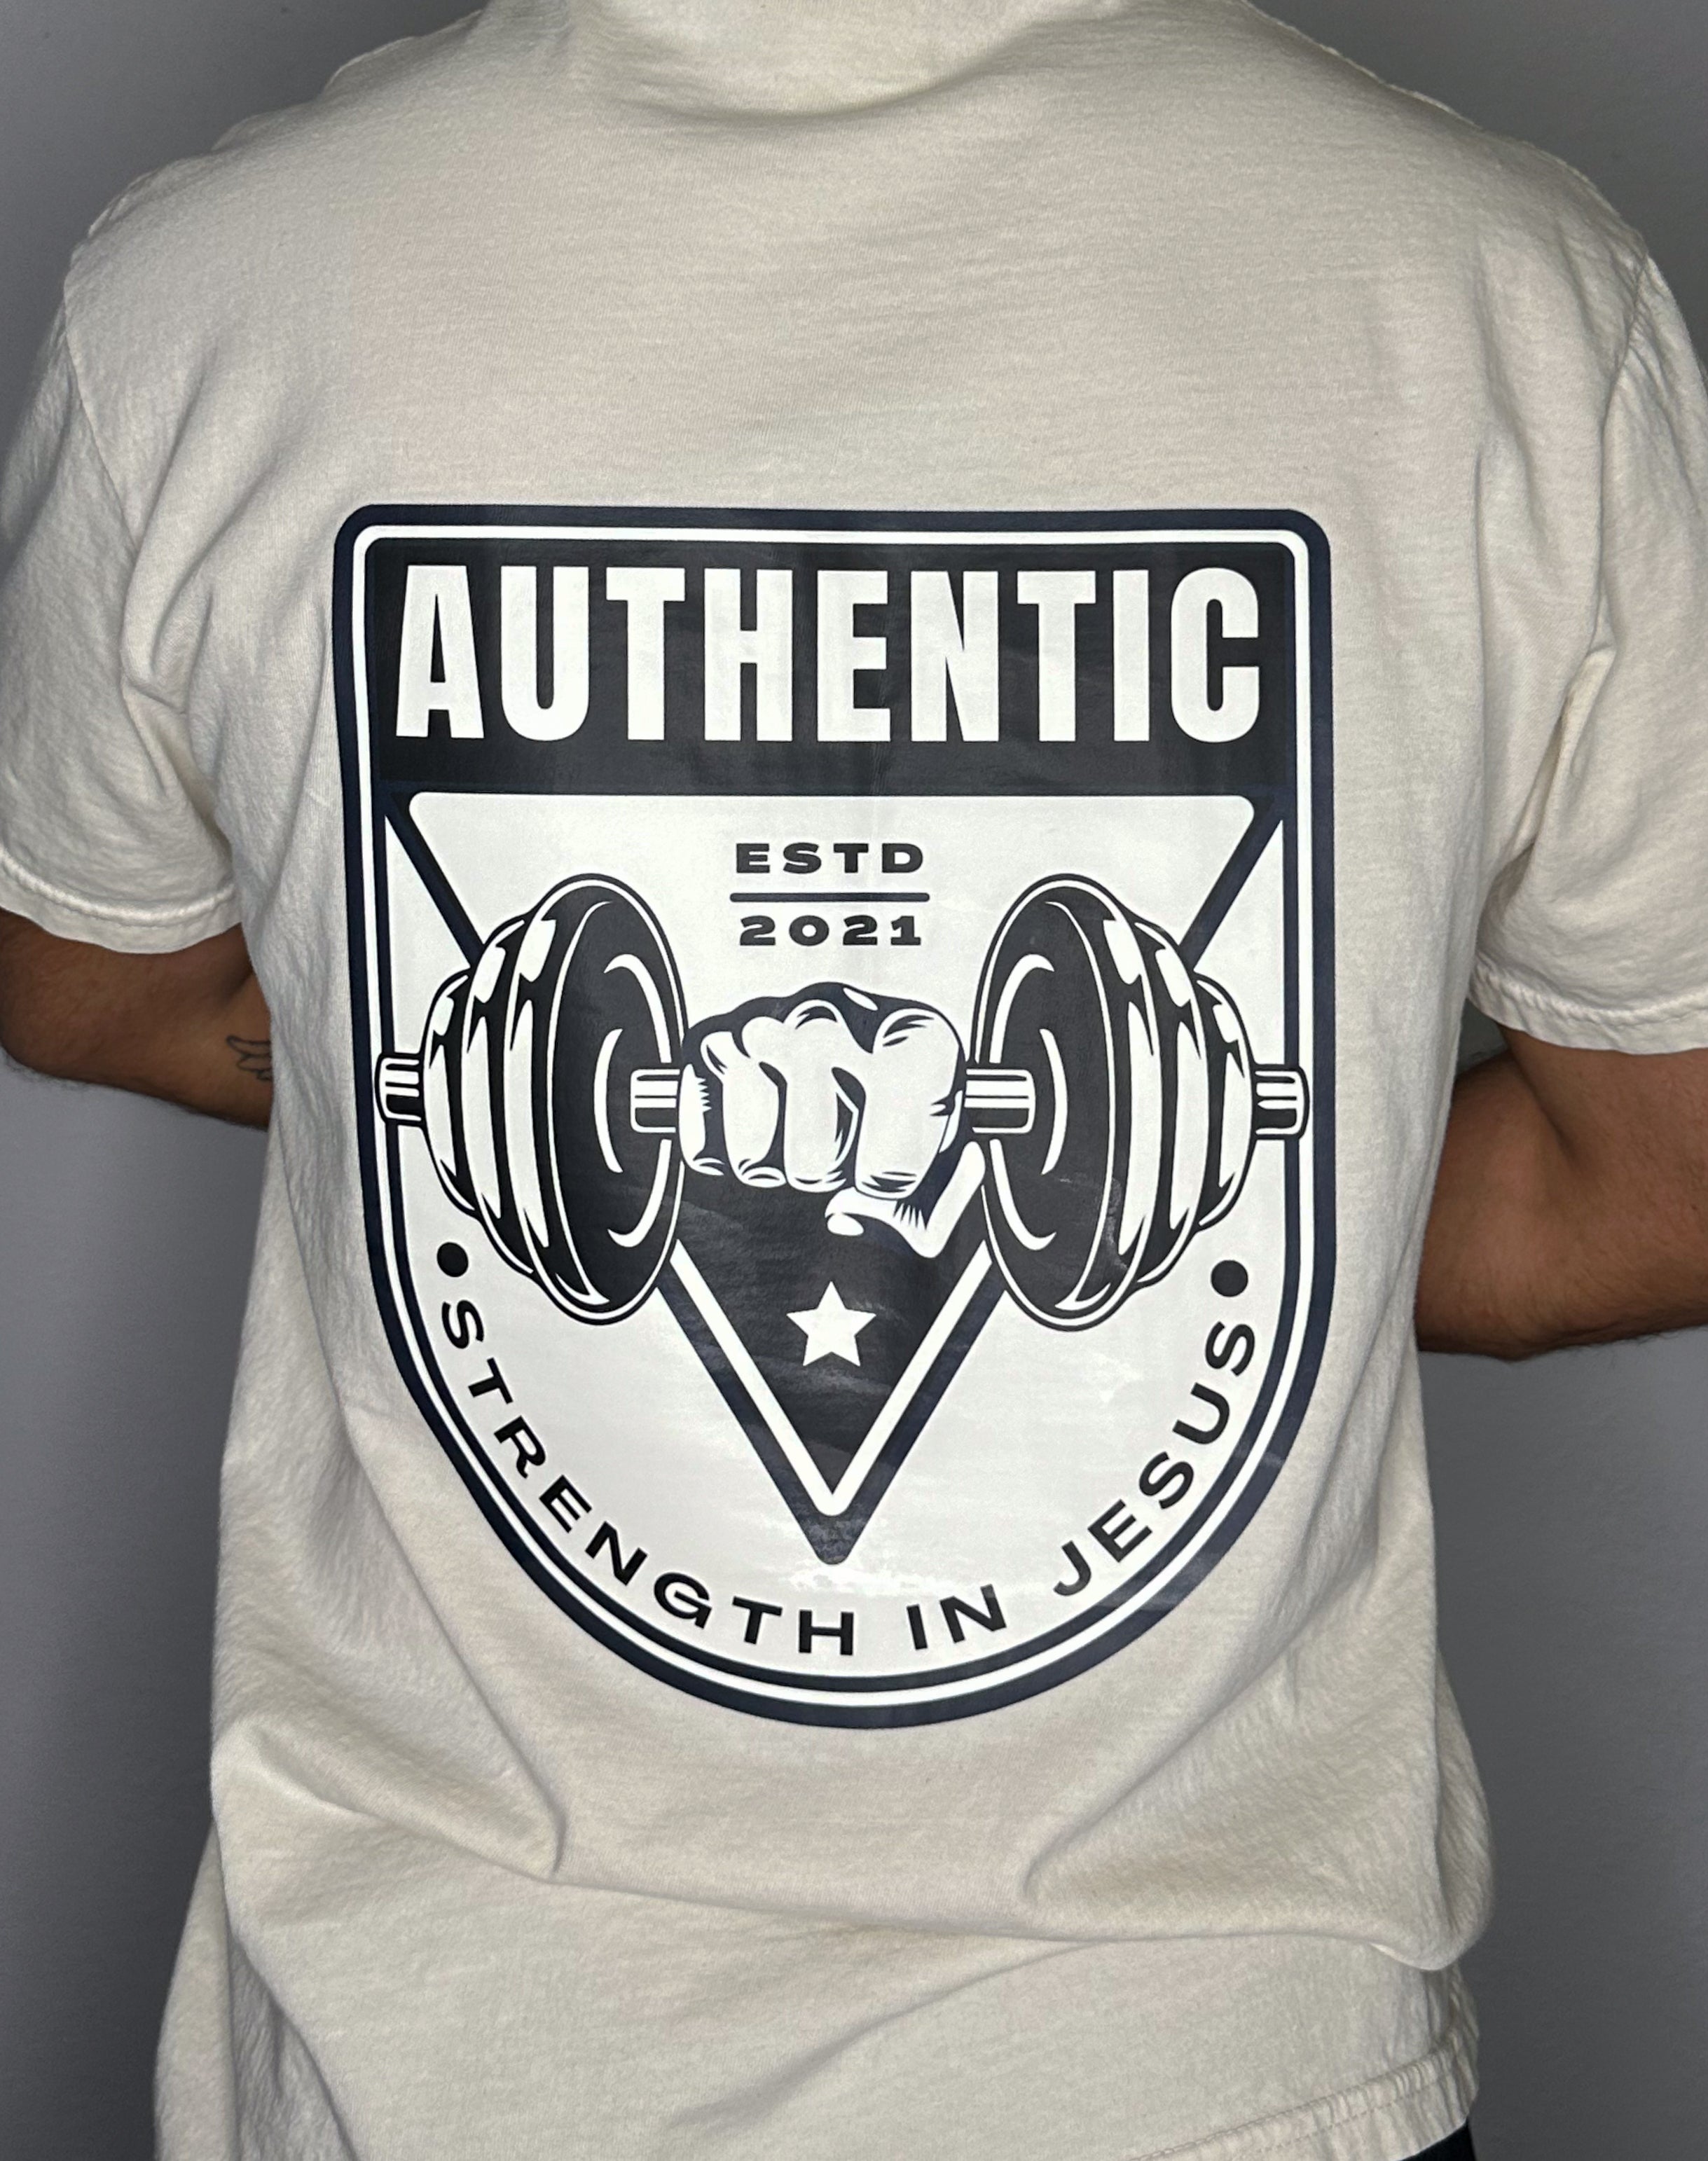 Authentic "Strength in Jesus" Unisex Premium pump cover/T-shirt